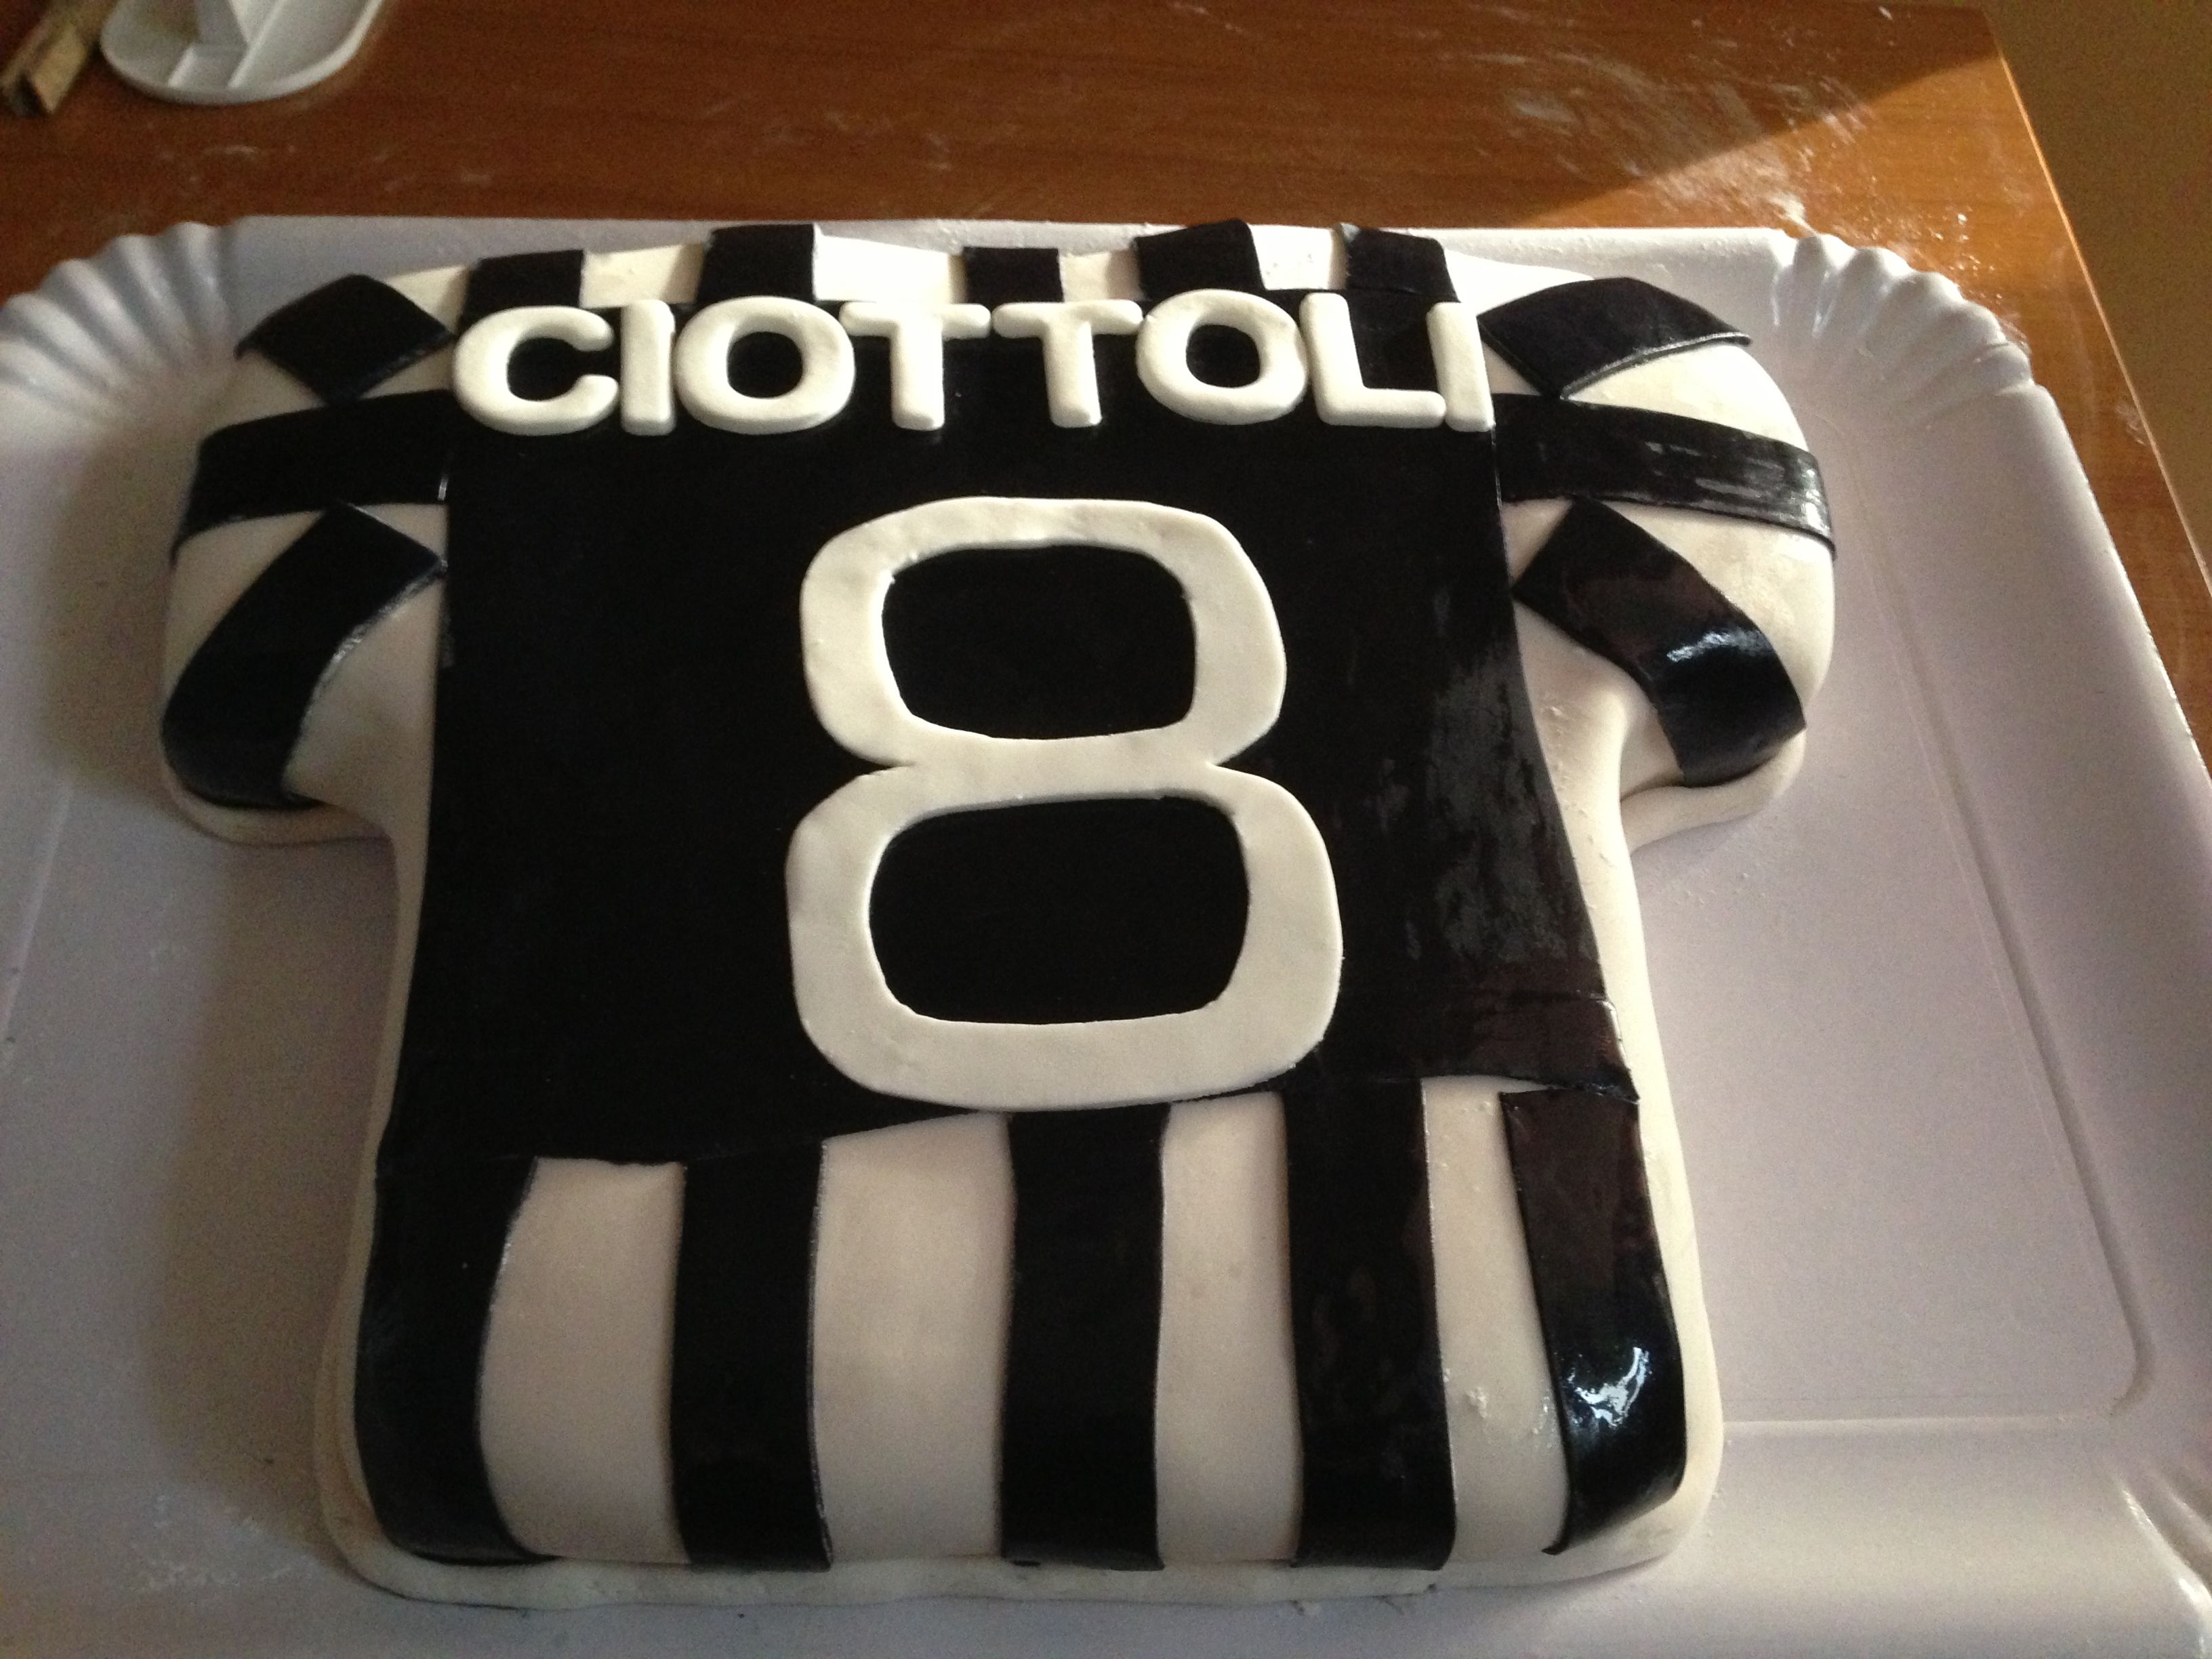 Ronaldo Juventus Cake Images - Hd Football